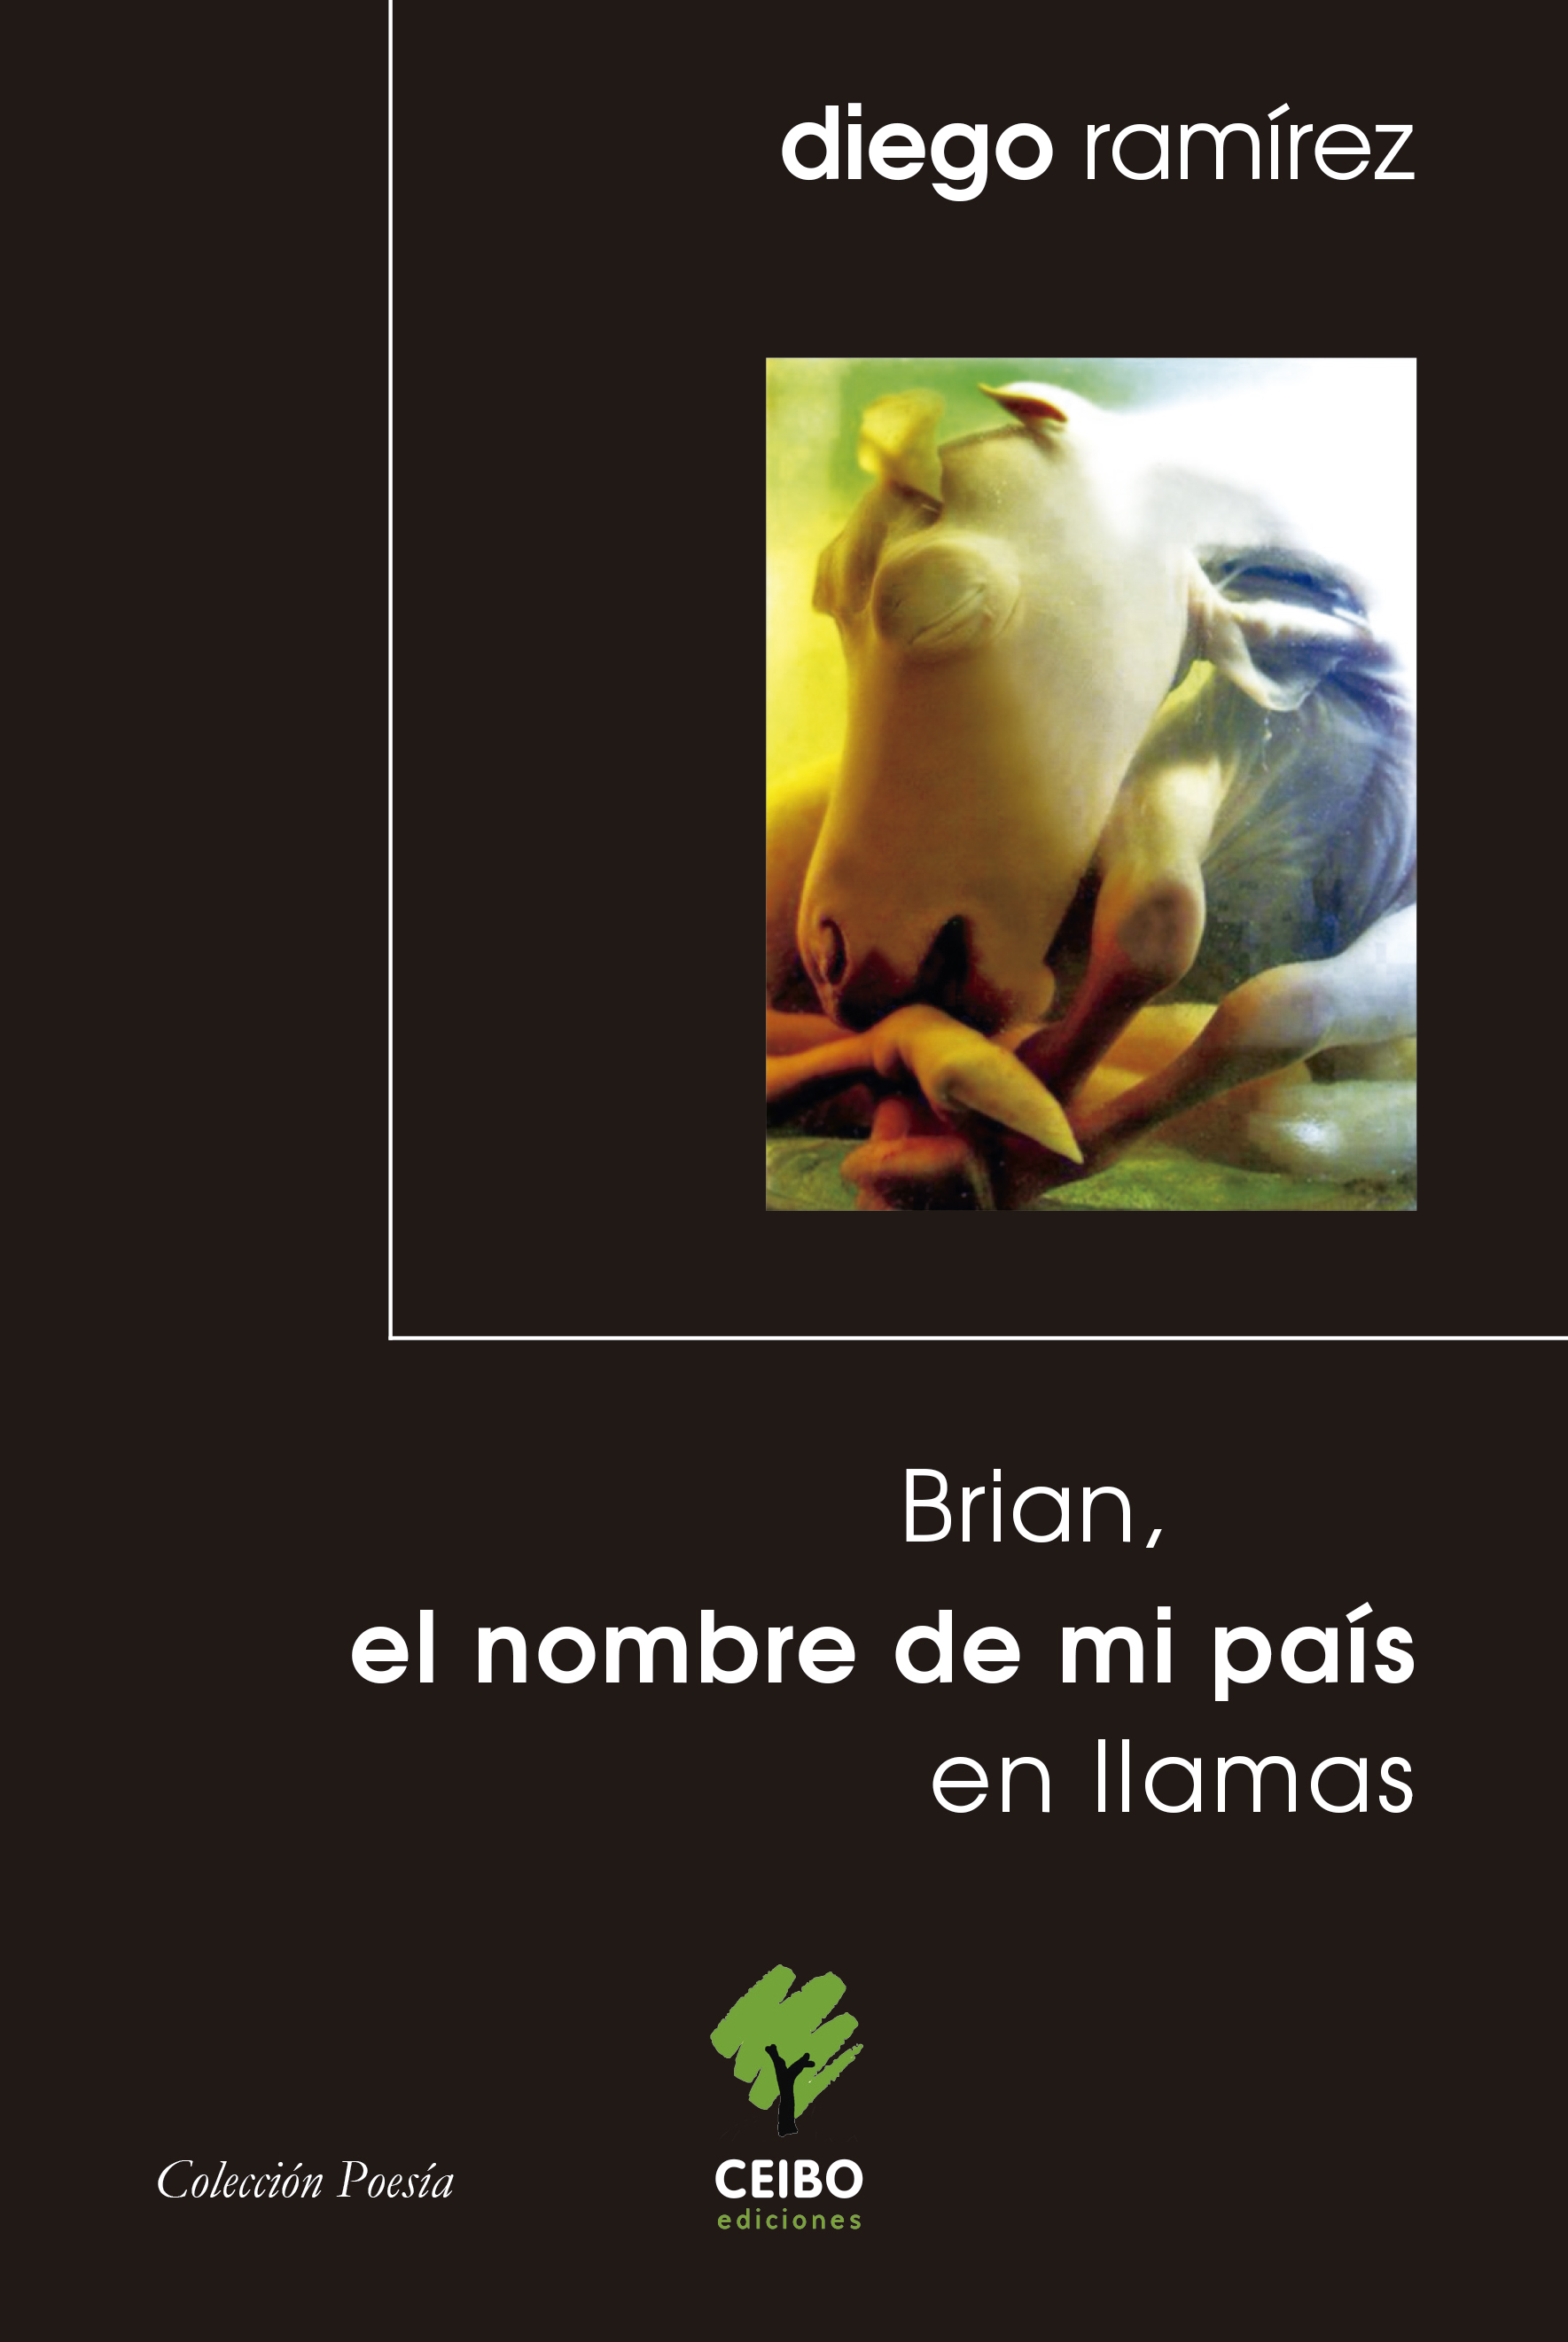 Diego Ramírez lanza el poemario  “Brian, el nombre de mi país en llamas”  en Museo de la Solidaridad Salvador Allende